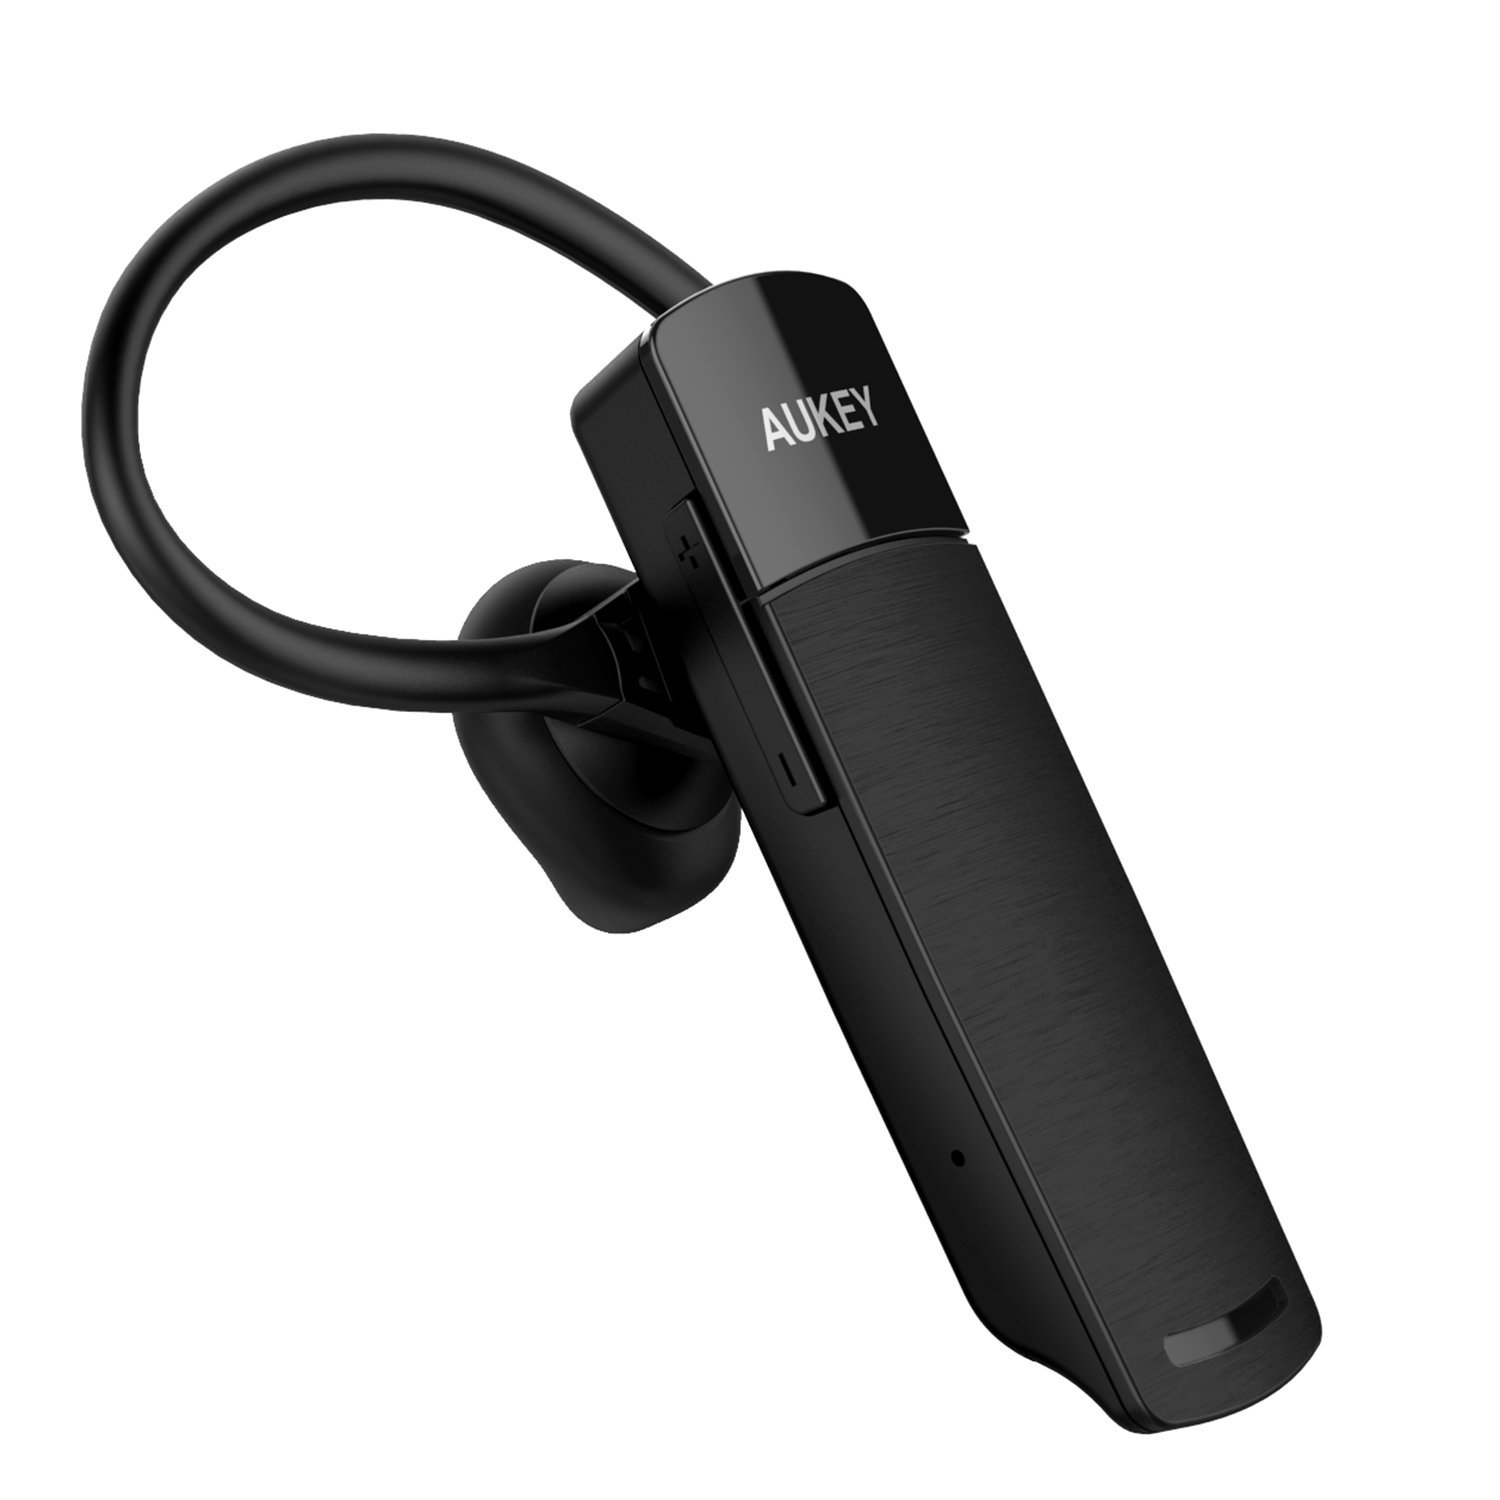 Bild zu [Prime] Bluetooth Headset Aukey EP-B19 für 10,99€